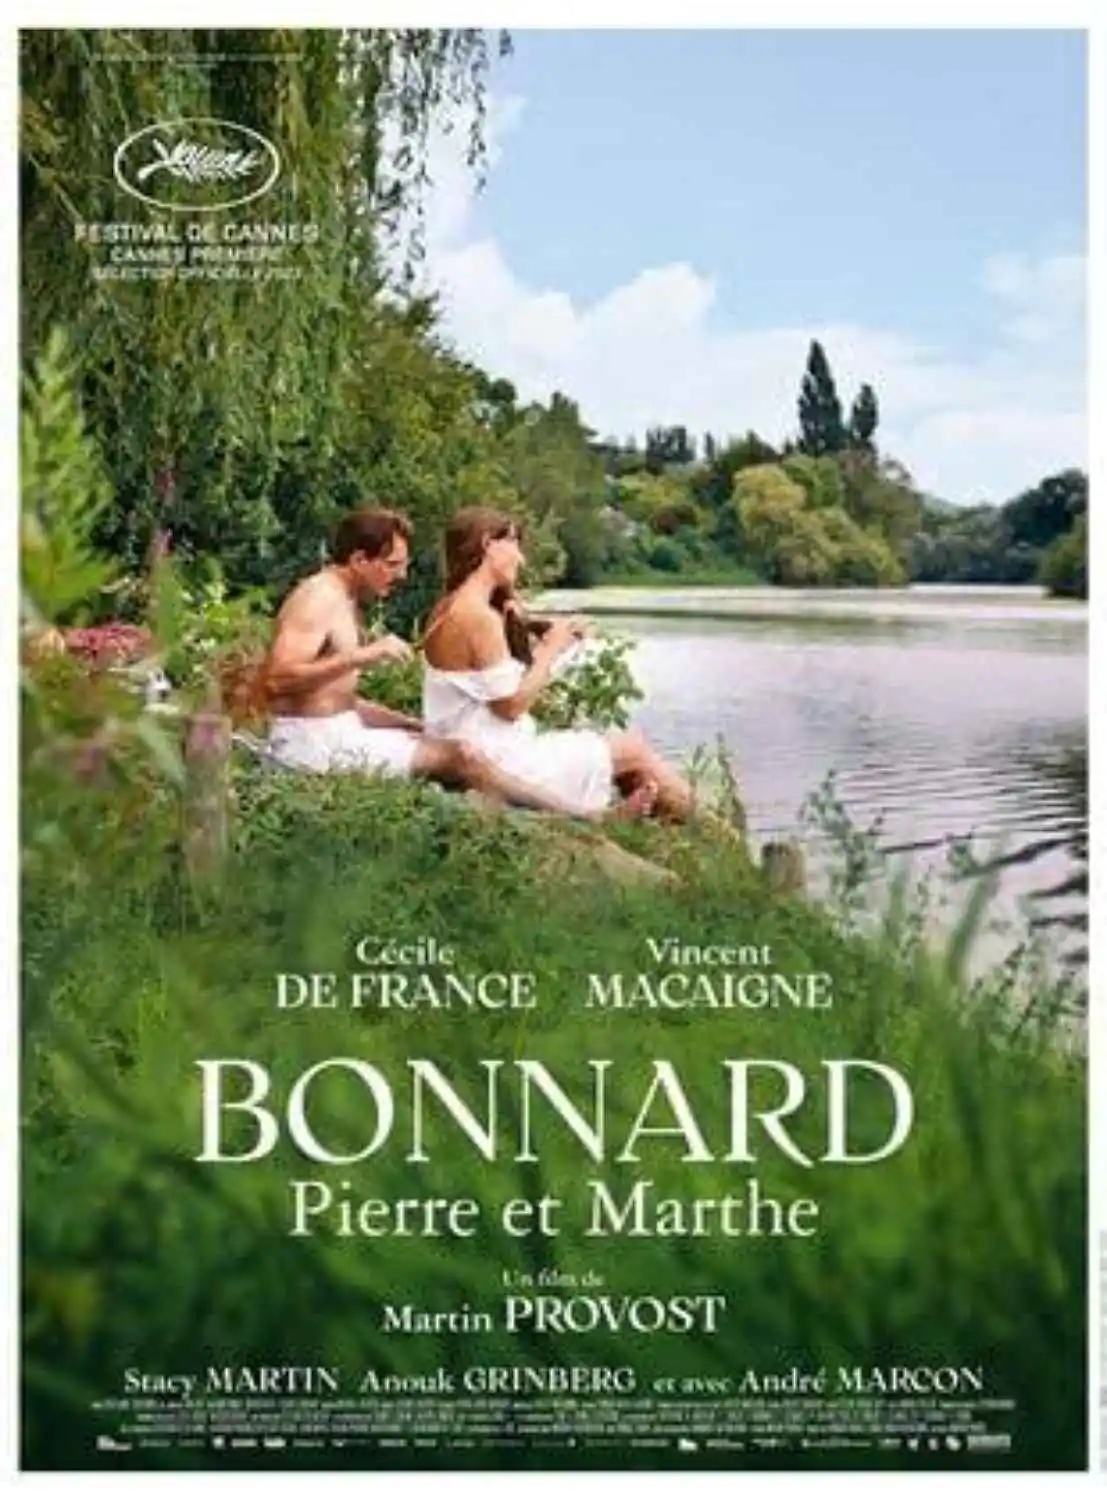 CINEMA A L'AUDITOIRE DE JOINVILLE :"BONNARD PIERRE ET MARTHE"